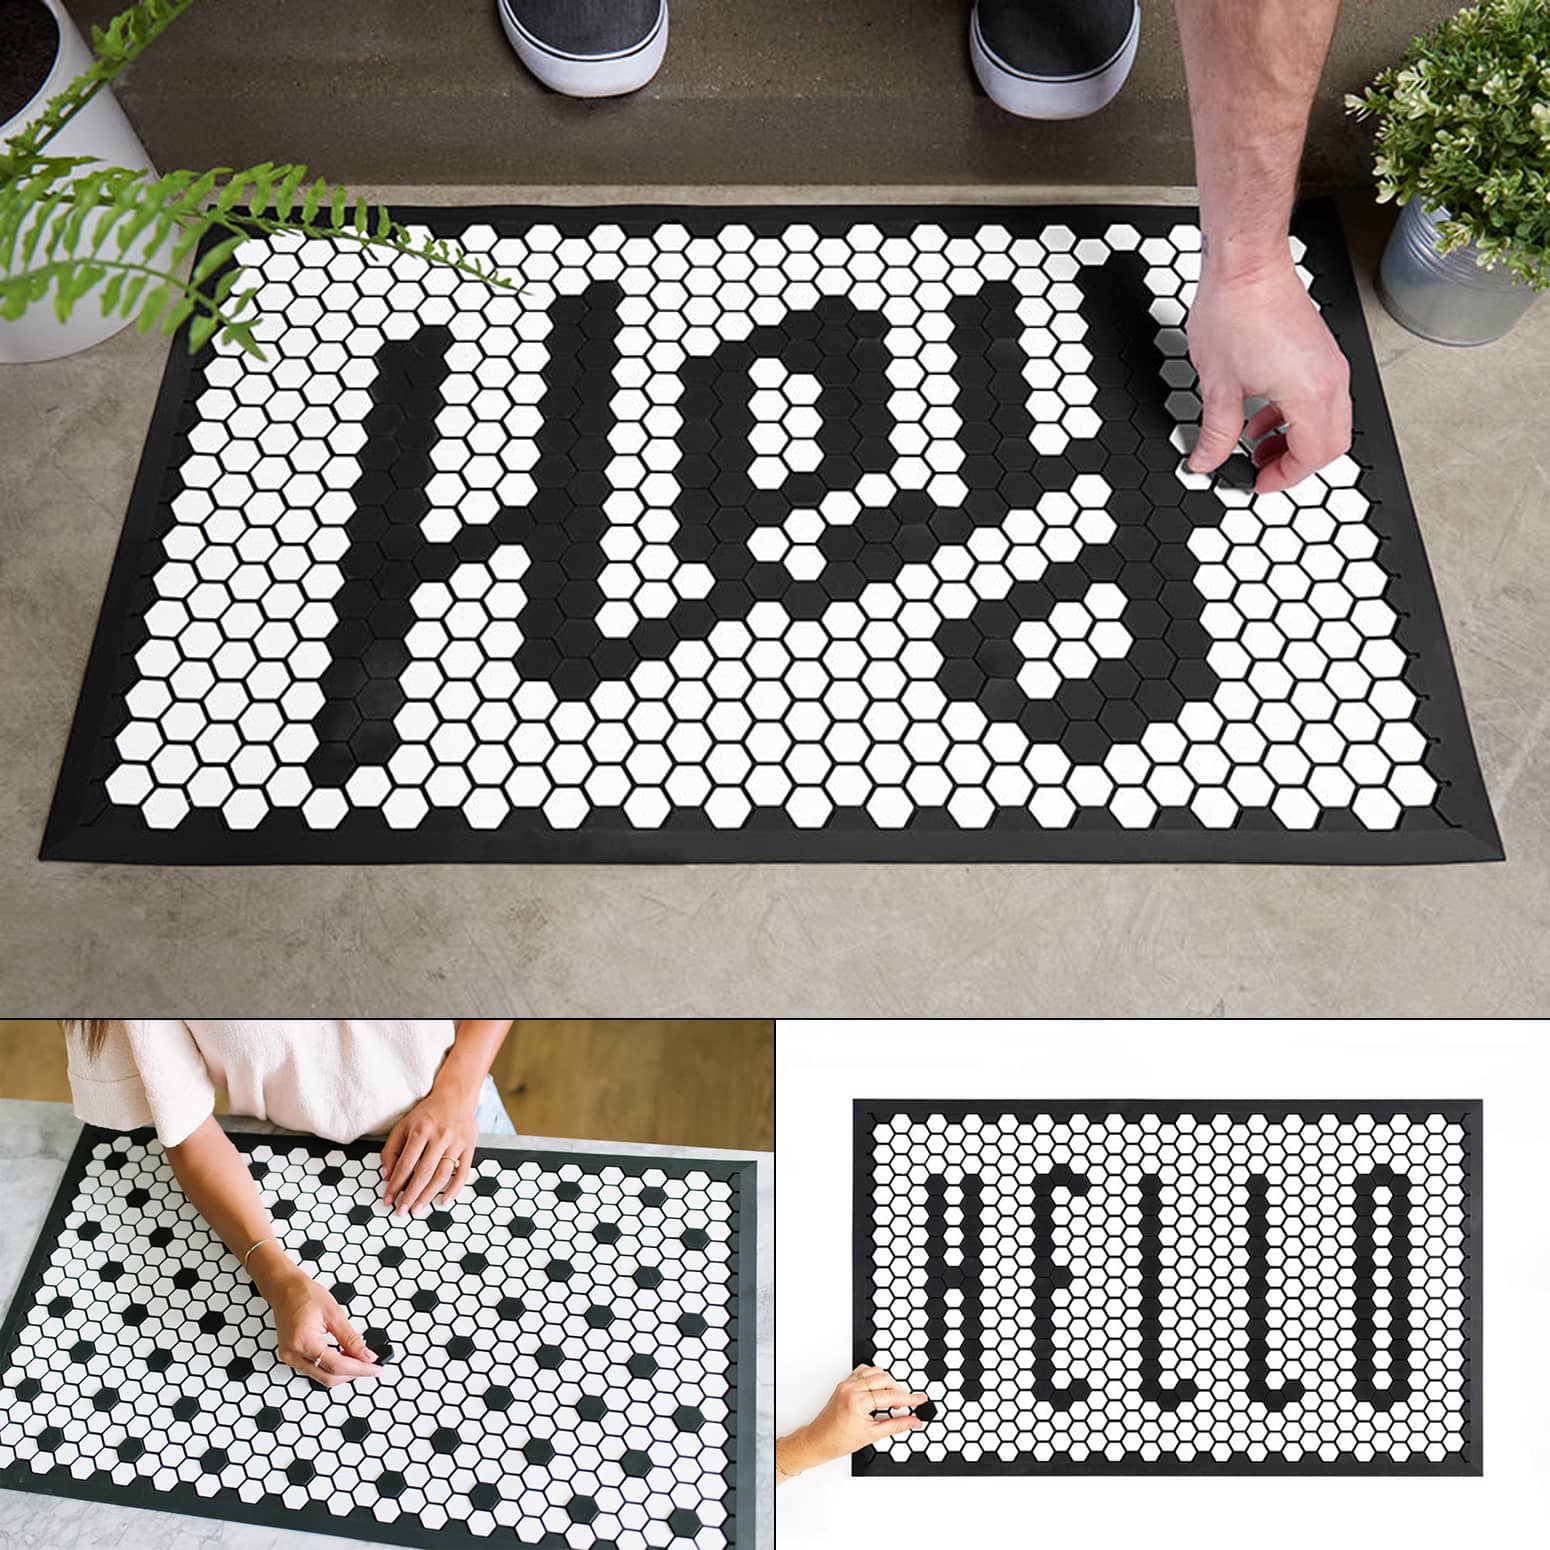 Customizable Tile Floor Mat